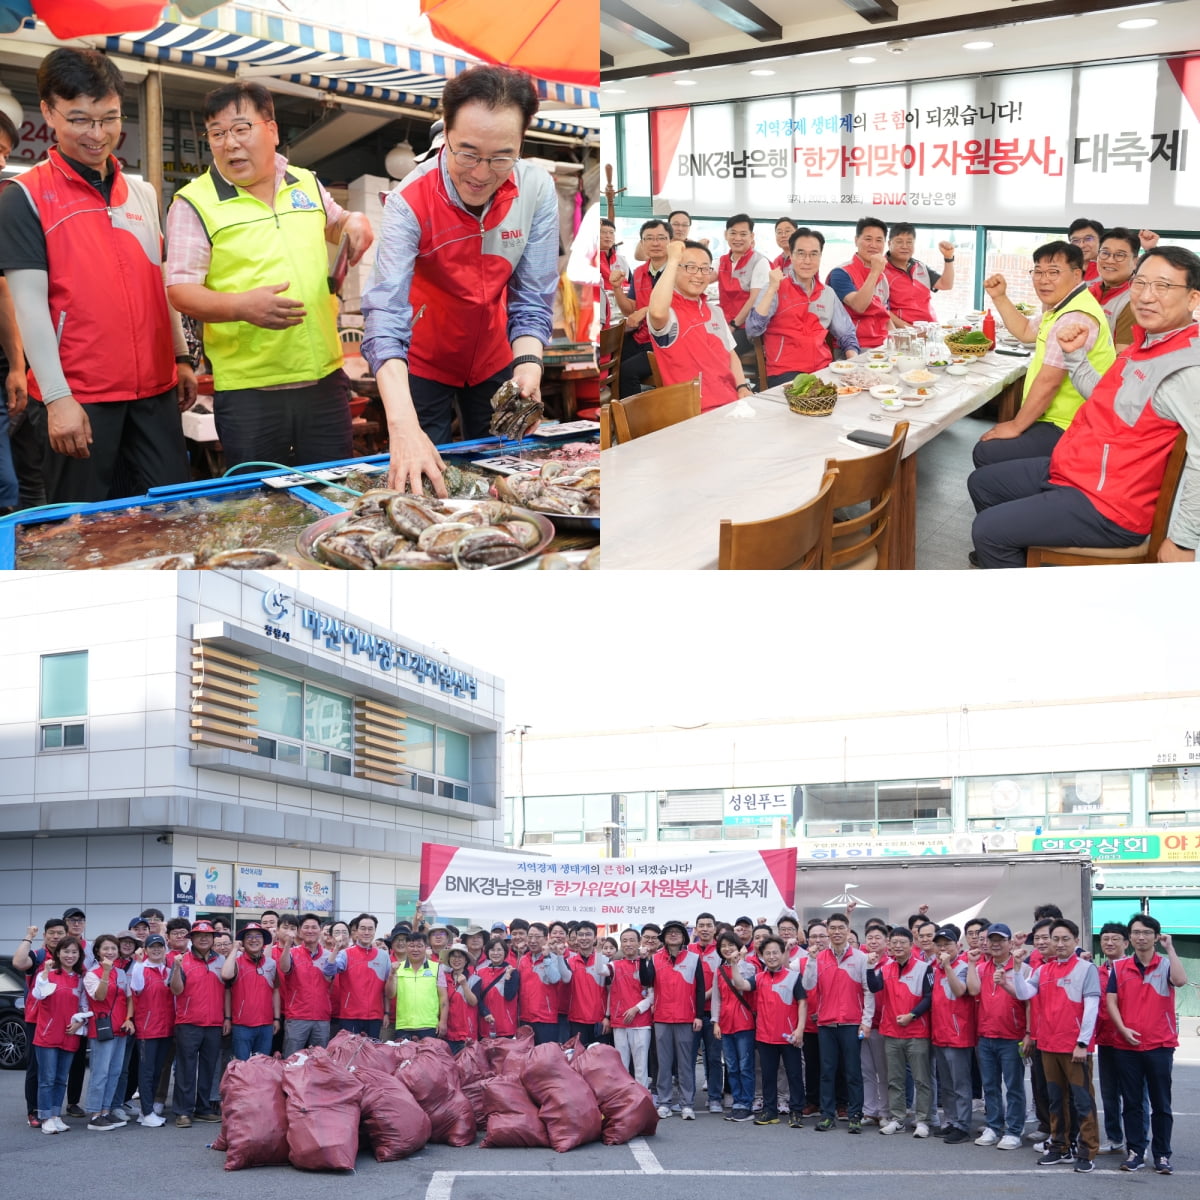 BNK경남은행은 23일 추석을 앞두고 ‘한가위맞이 자원봉사 활동’을 전개했다.